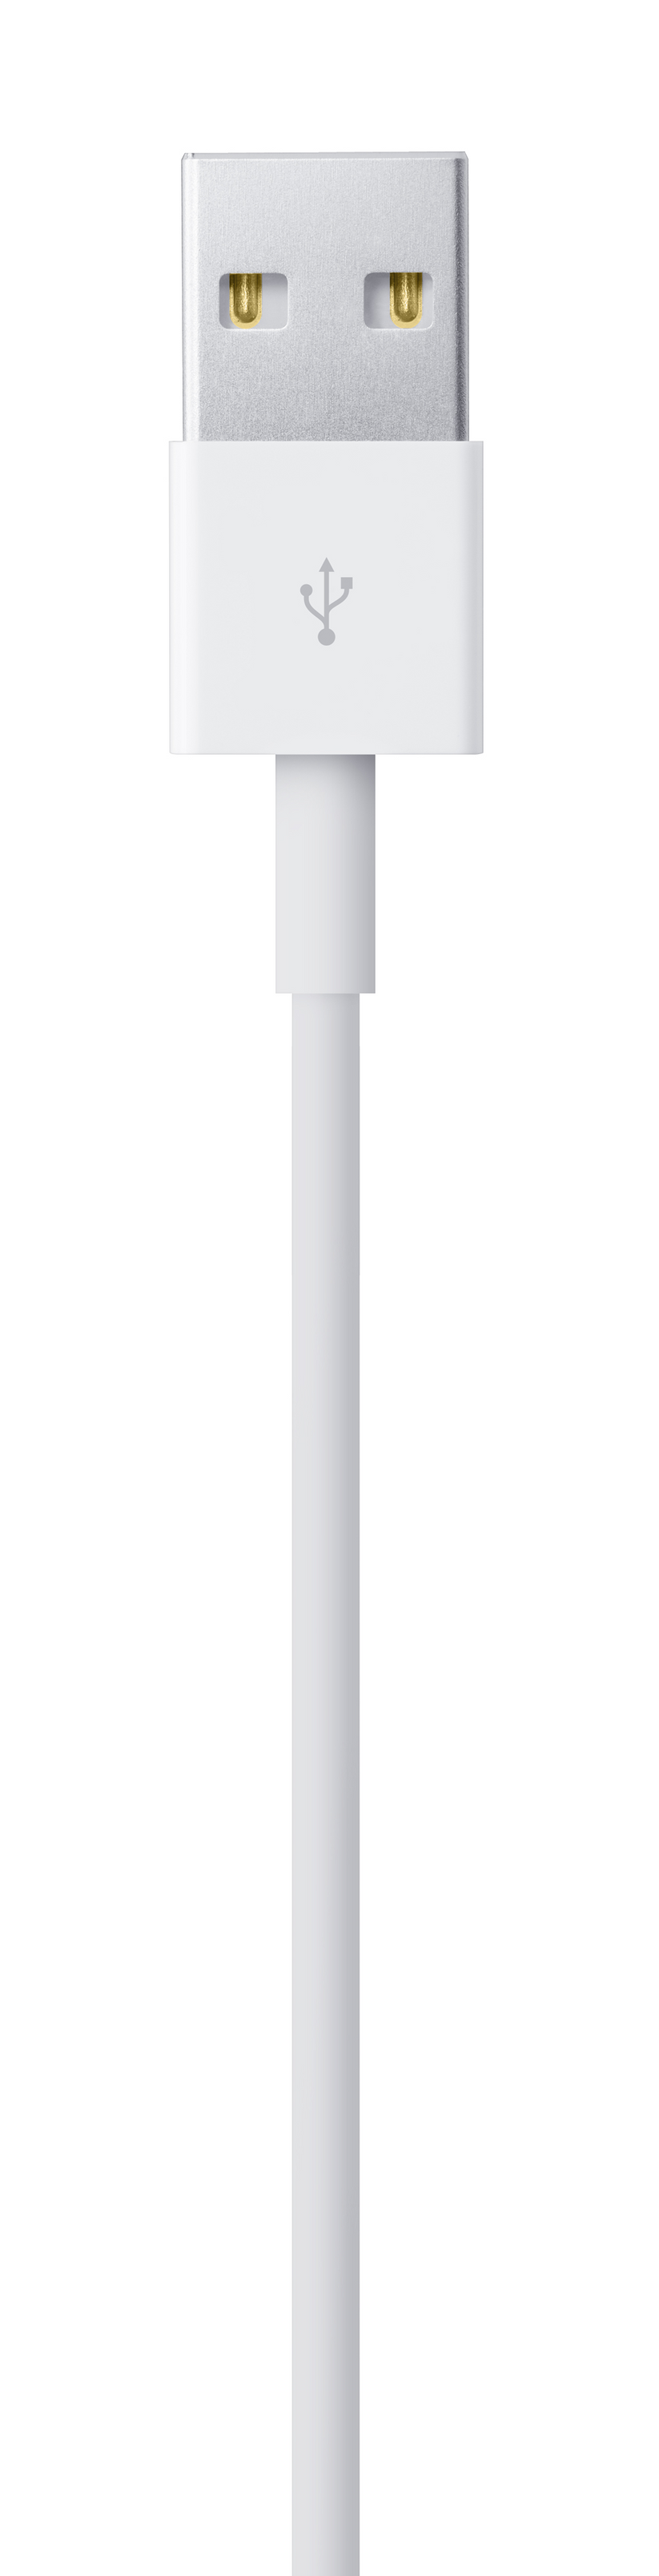 Cable de carga USB para iPhone iPad iPod AWP18070W, Aiwa Store Panamá